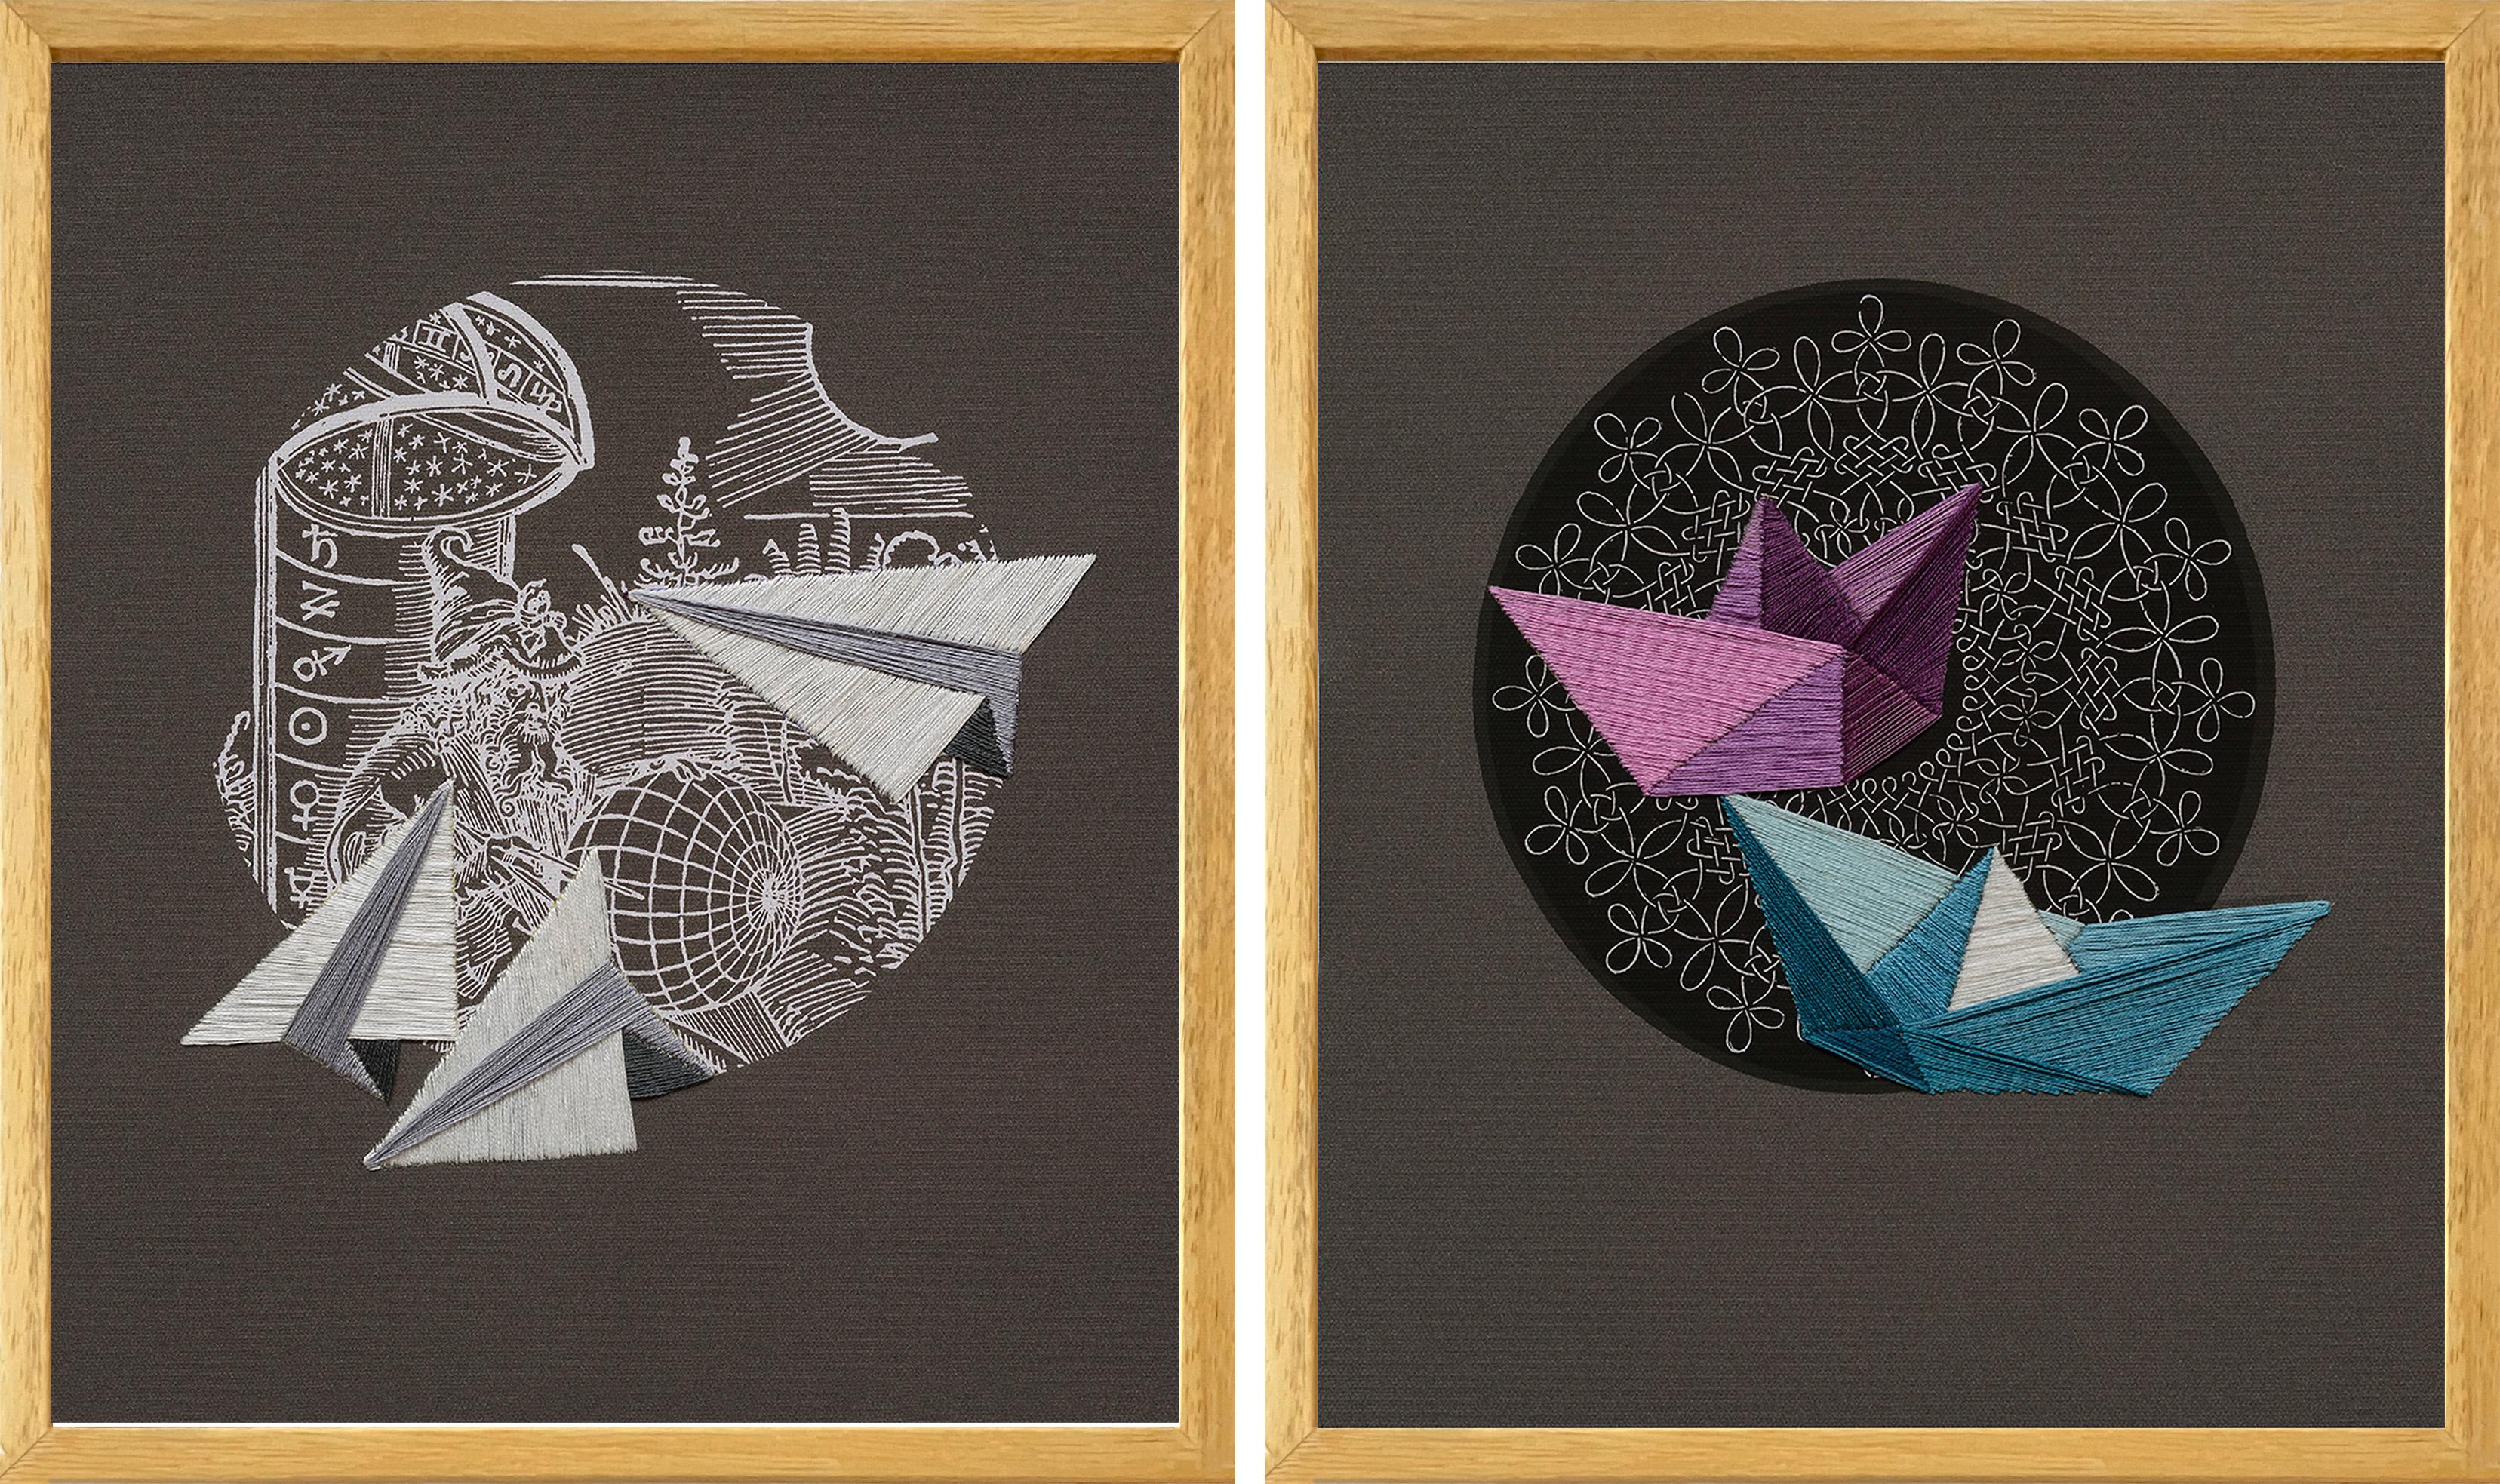 El Mago, und Náufragos inminentes Diptychon. Textilkunst aus der Serie Durero  (Zeitgenössisch), Mixed Media Art, von Ana Seggiaro